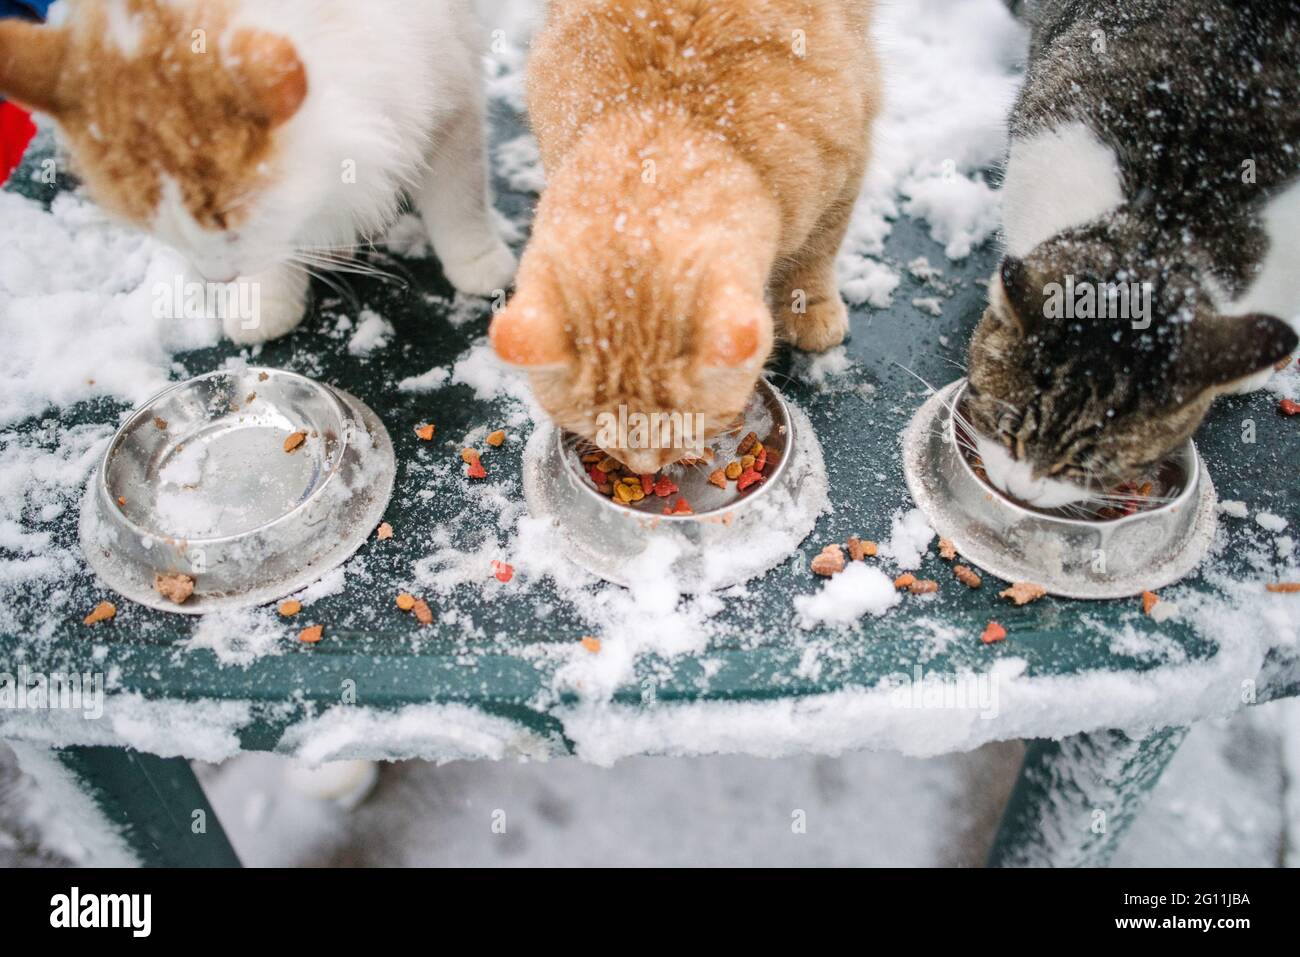 Kanada, Ontario, drei Katzen, die im Schnee aus Schüsseln fressen Stockfoto